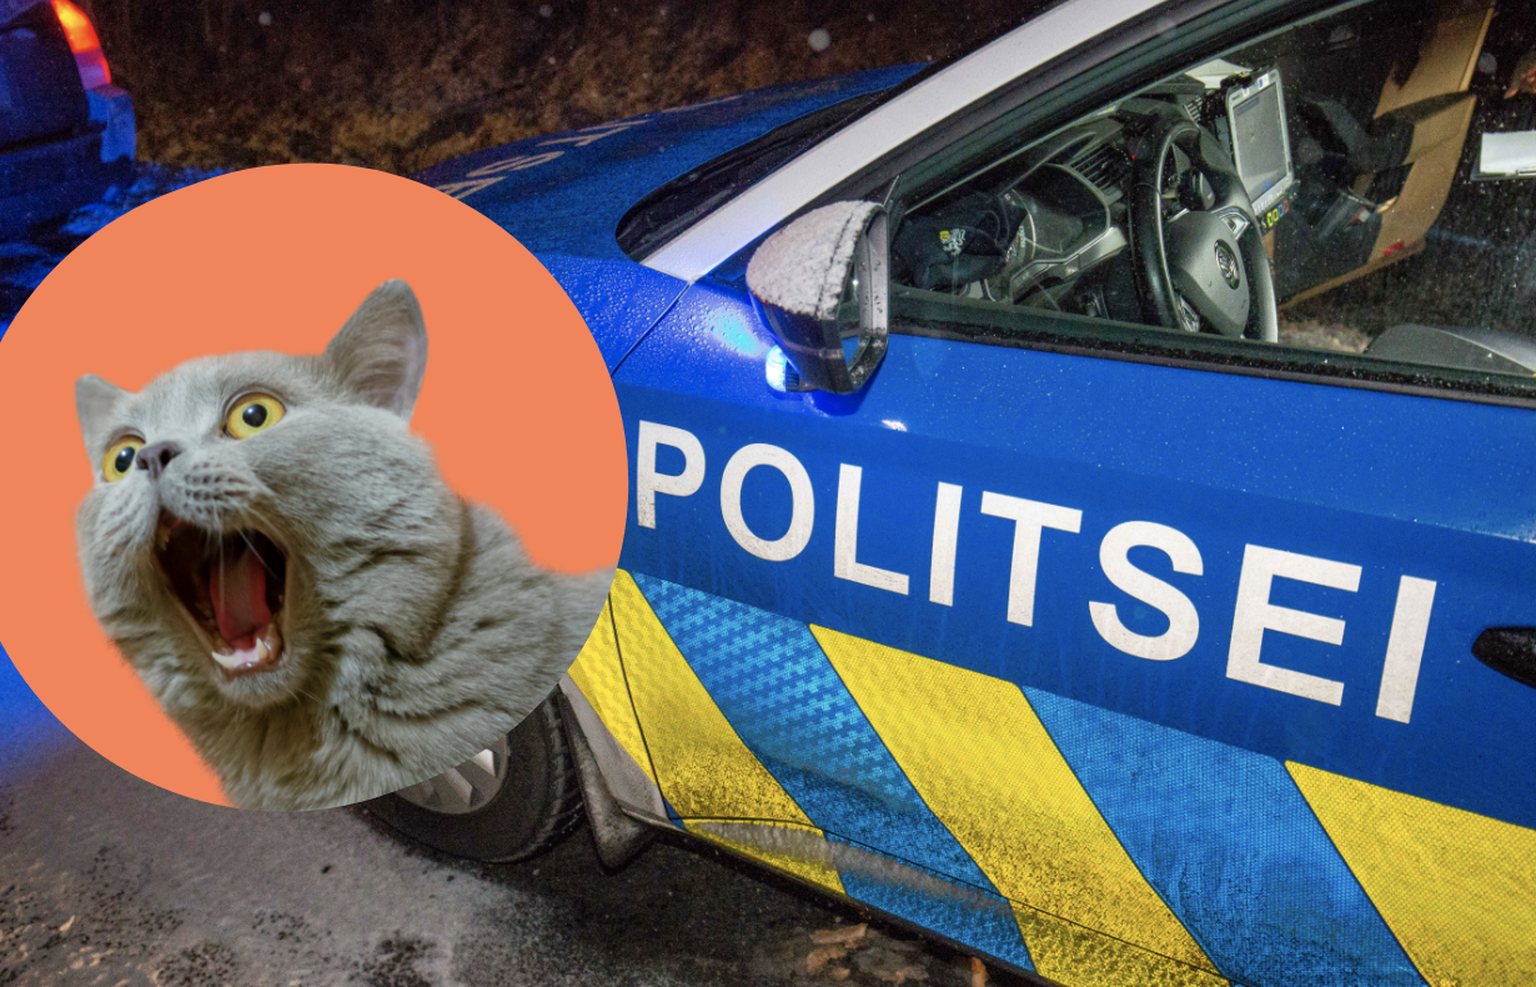 Tartus lärmavatele naabritele politsei kutsunu pidi üllatuma: kära ja müra põhjustas hoopiski kass. Pilt on illustreeriv.